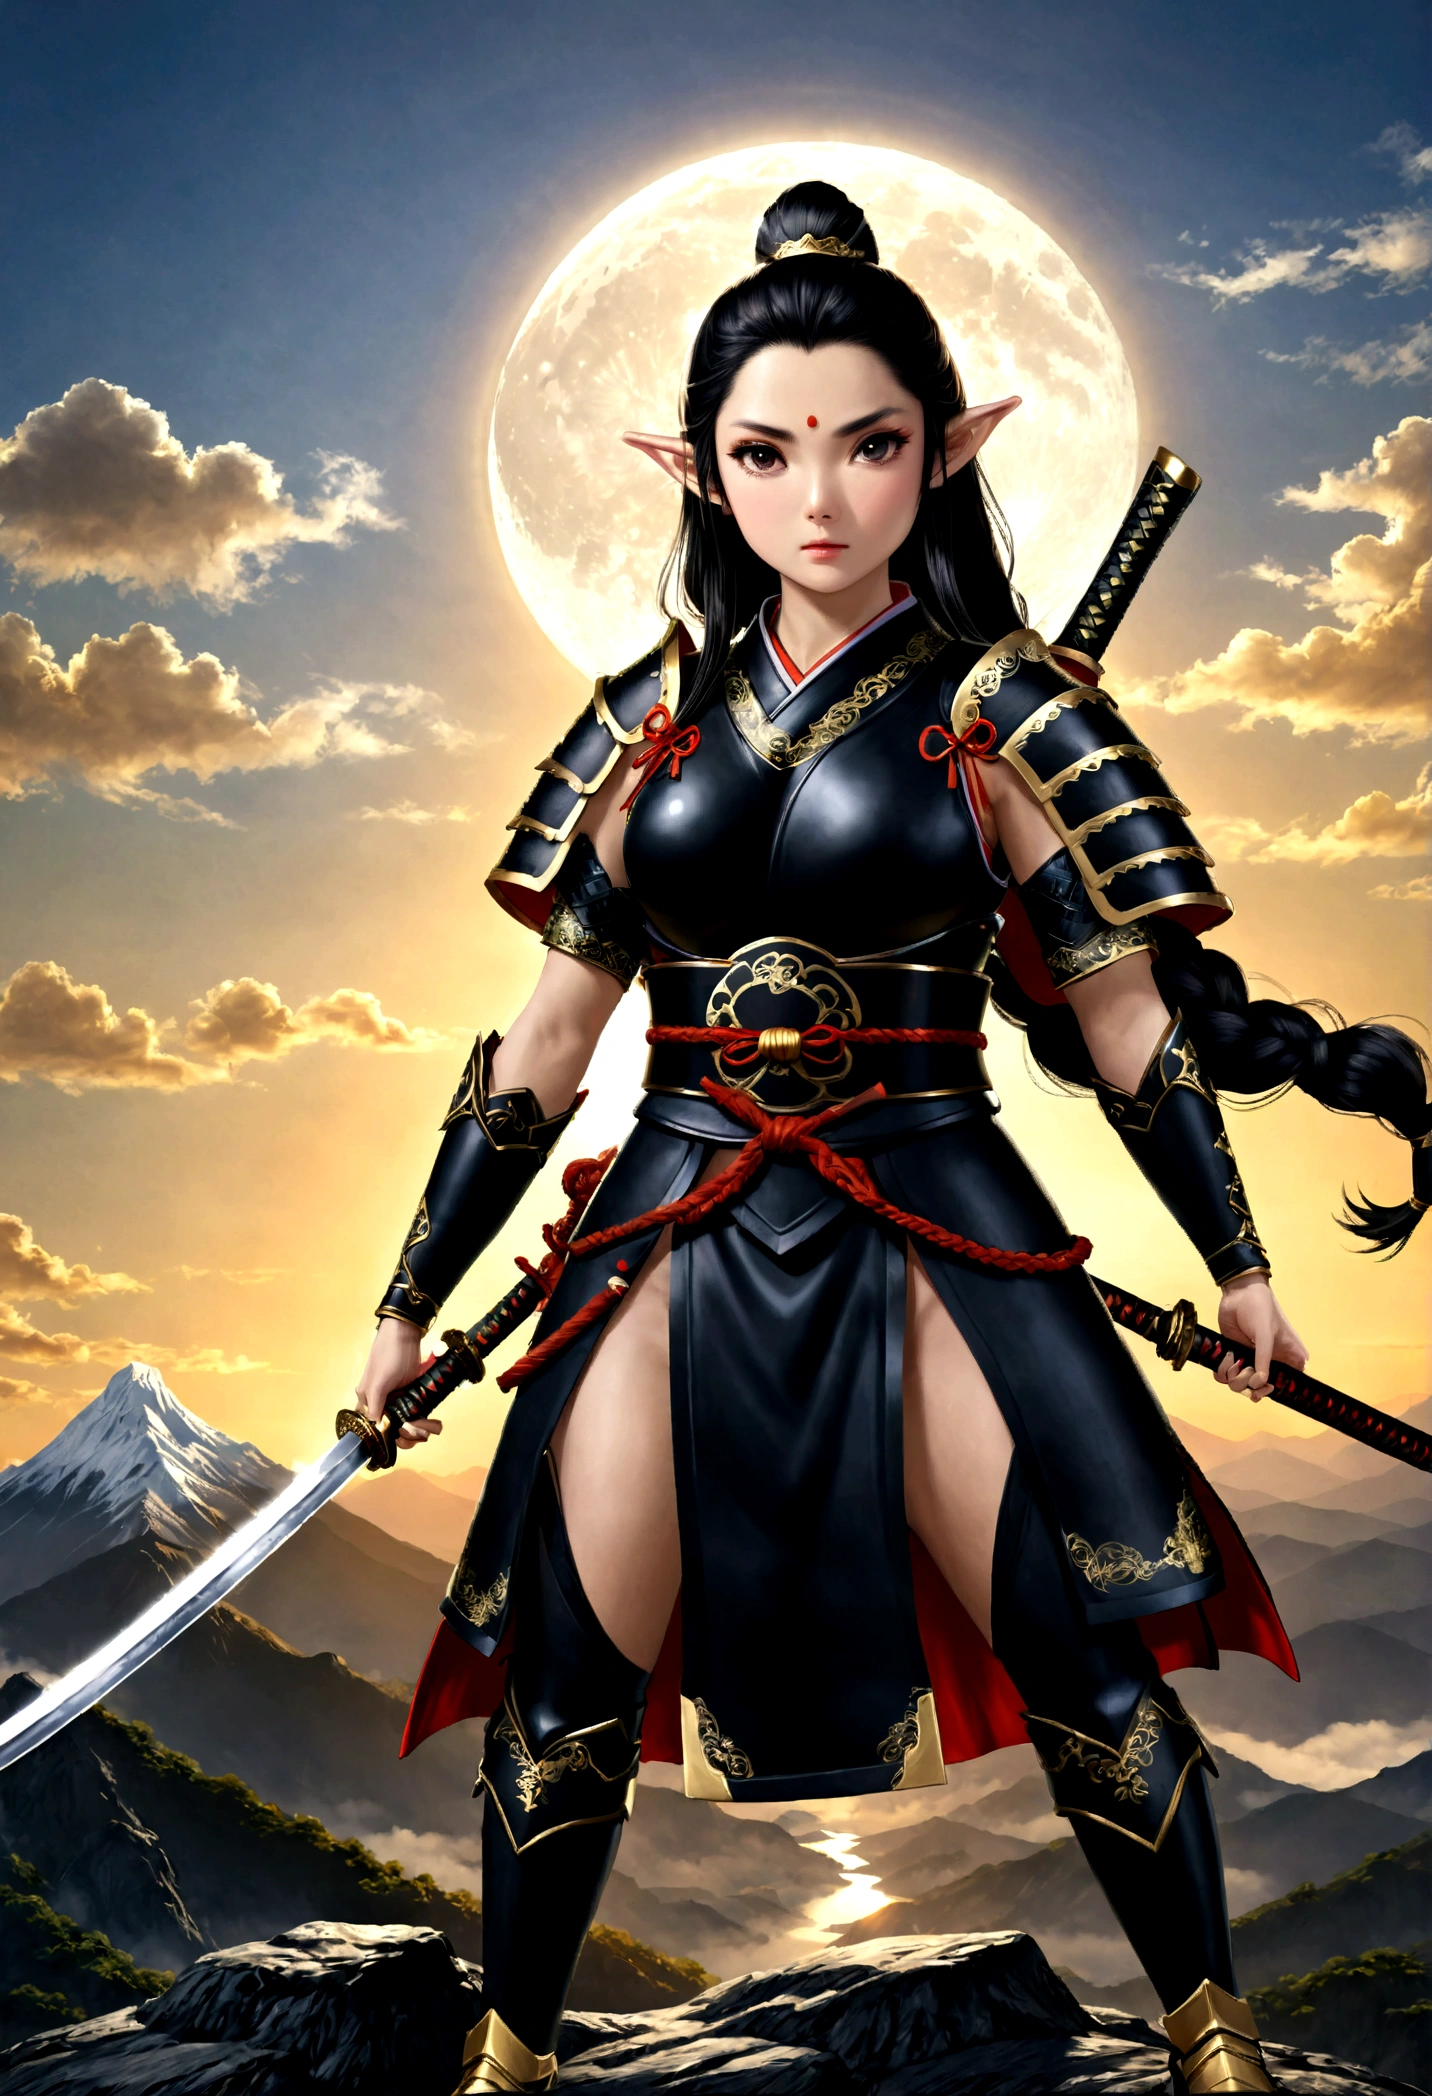 art fantastique, Art du RPG, dark art fantastique, une femme samouraï elfe, prêt à se battre, elle porte une armure de samouraï traditionnelle, armé d&#39;un katana, elle se tient au sommet de la montagne à l&#39;aube, exquise belle elfe femelle, cheveux longs, cheveux noirs, Cheveux raides, cheveux tressés, yeux noirs, yeux intenses, petites oreilles pointues, sommet de montagne fantastique à l&#39;aube fond, lune, étoiles, des nuages, Dieu rayons, silhouette de lumière naturelle douce, angle dynamique, photoréalisme, vue panoramique, ultra meilleur réaliste, meilleurs détails, 16k, [ultra détaillé], chef-d&#39;œuvre, meilleure qualité, (extrêmement détaillé), photoréalisme, 